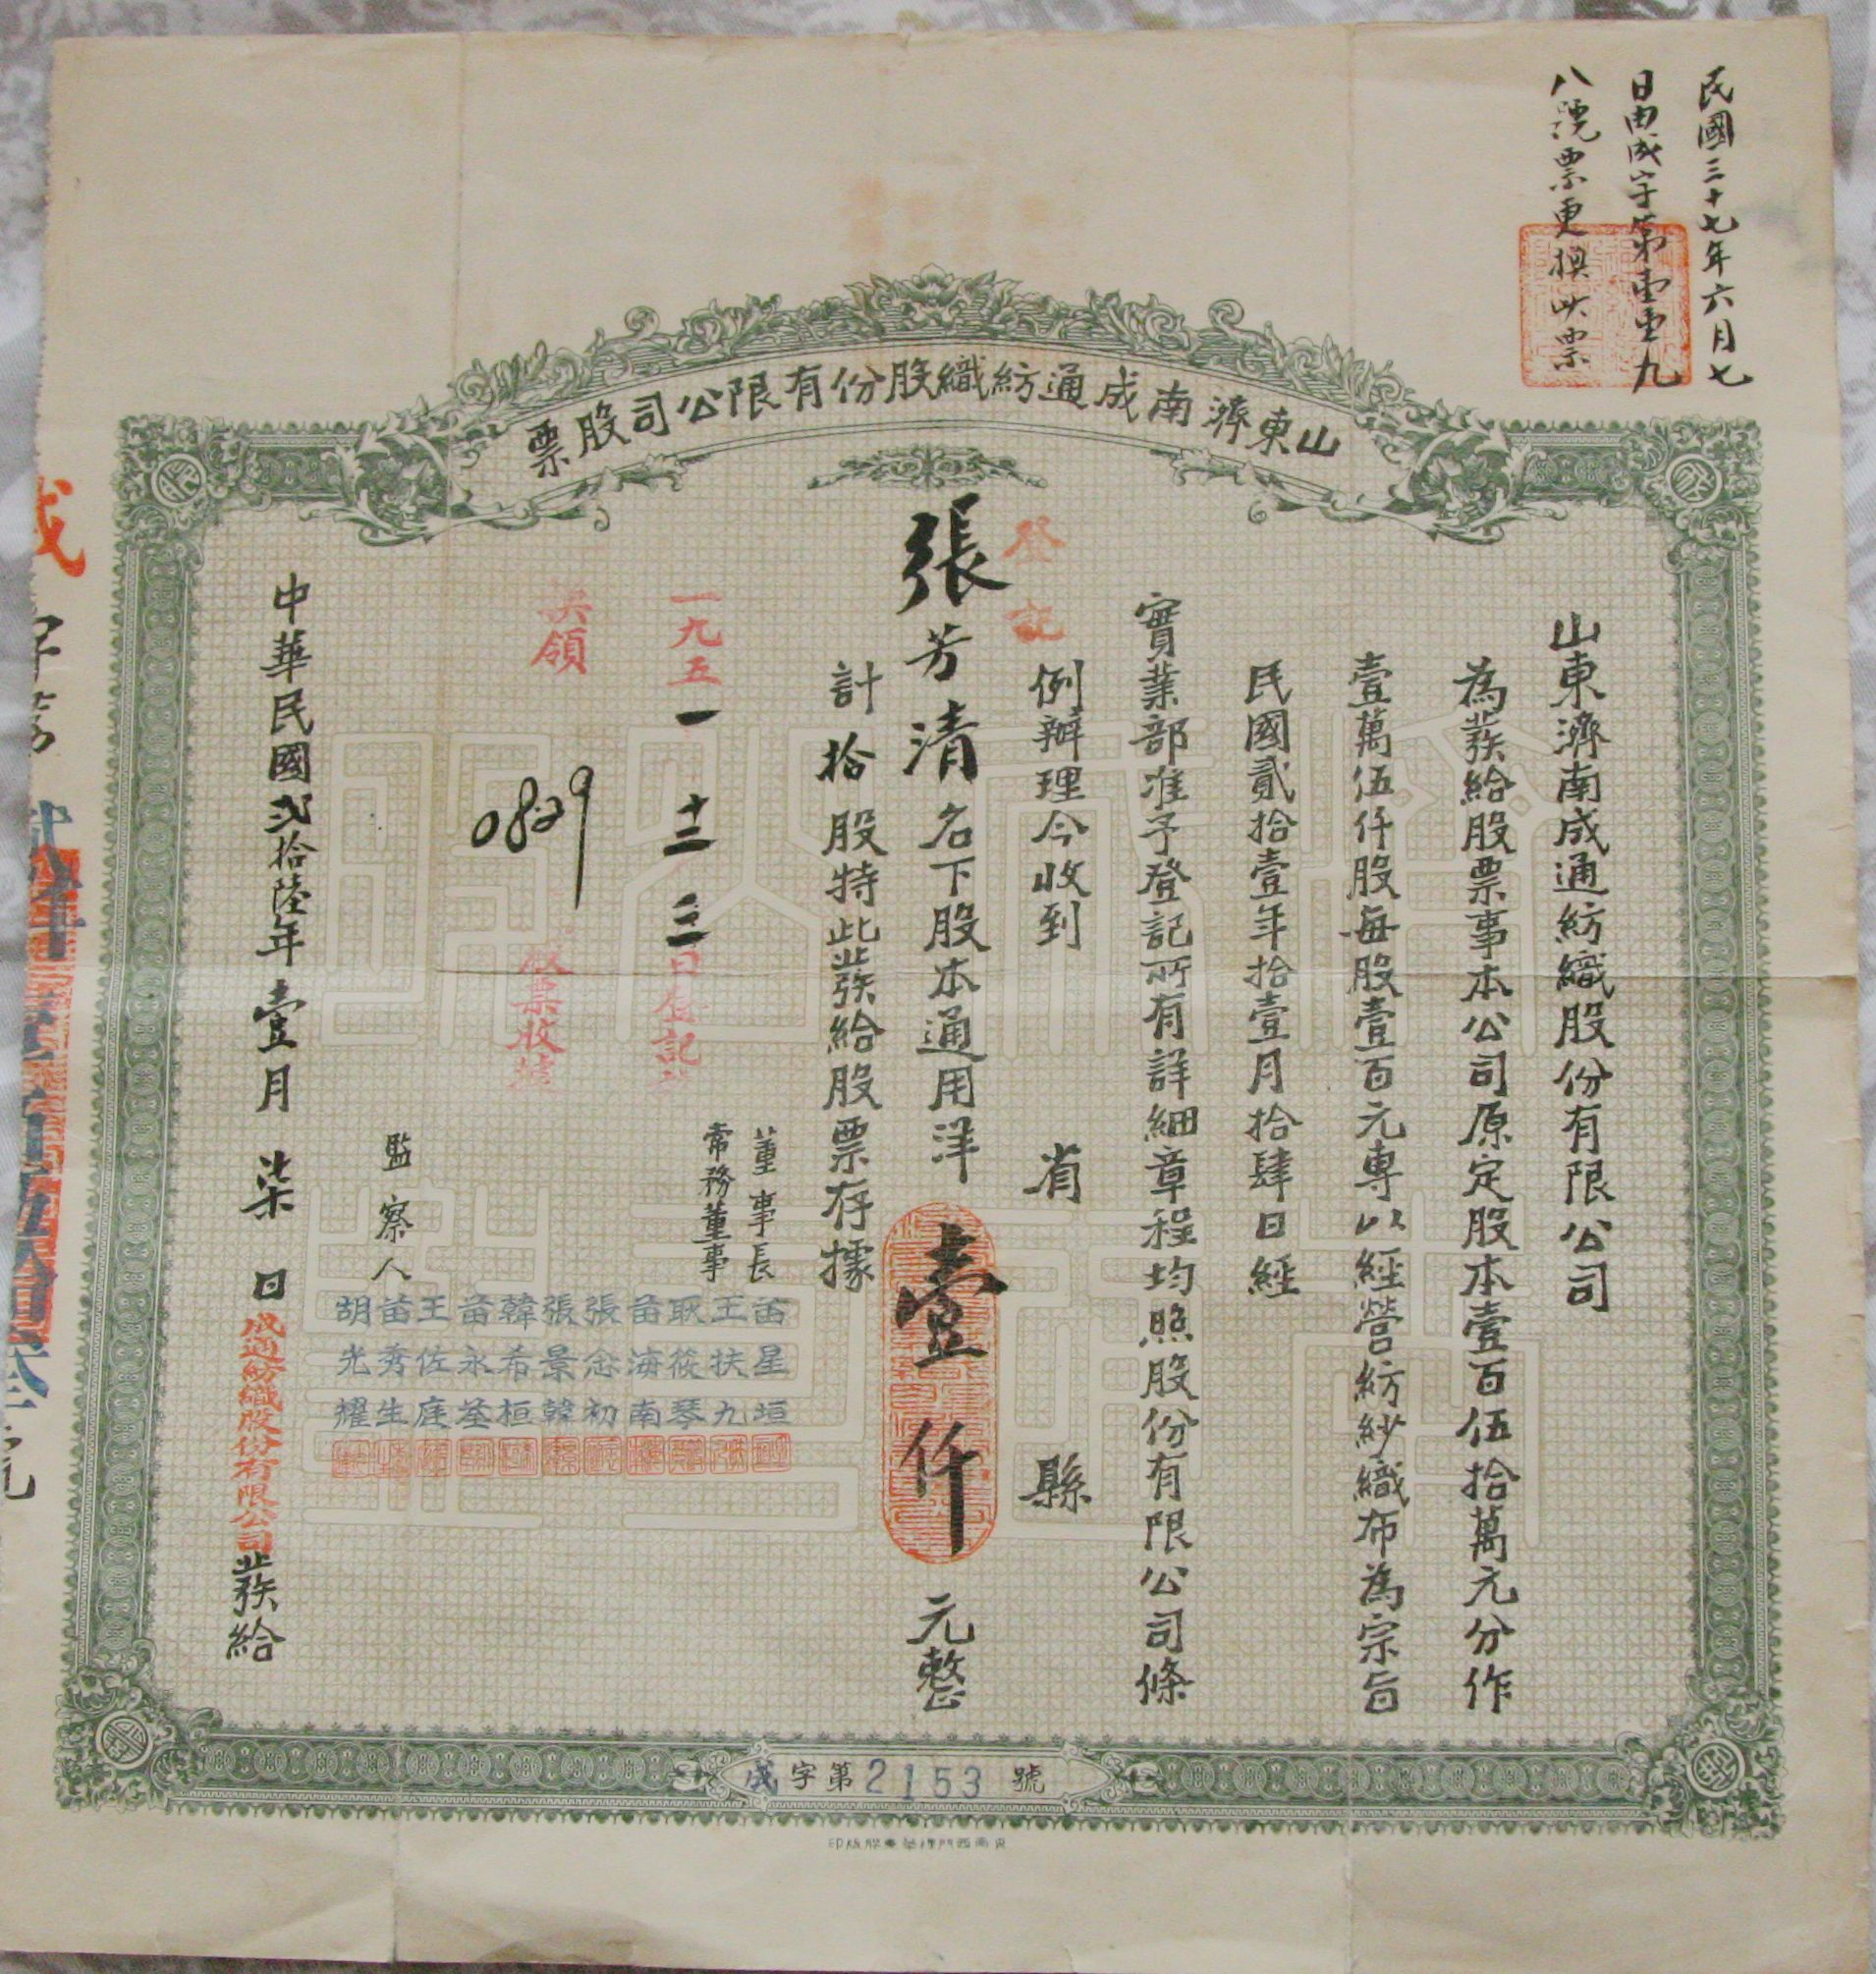 S0104, Shandong Jinan City, Chengtong Textile Co, 100 Shares Stock, 1937